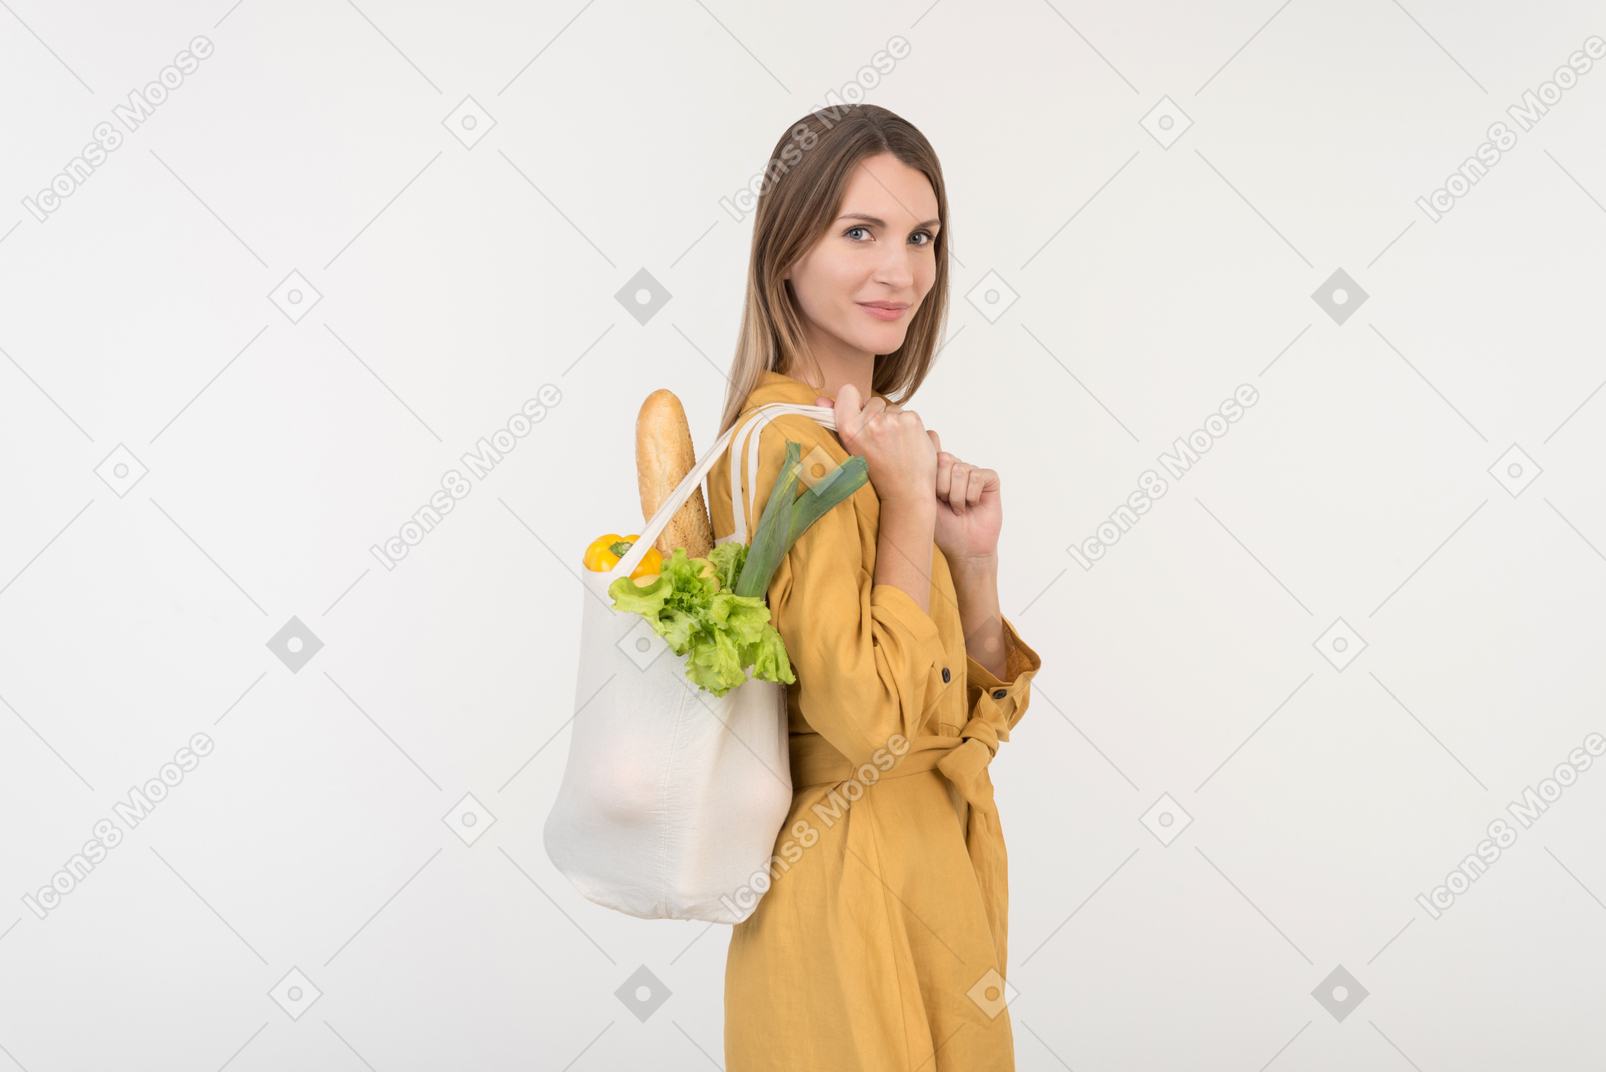 Mujer joven con bolsa de compras con verduras y mirando hacia abajo